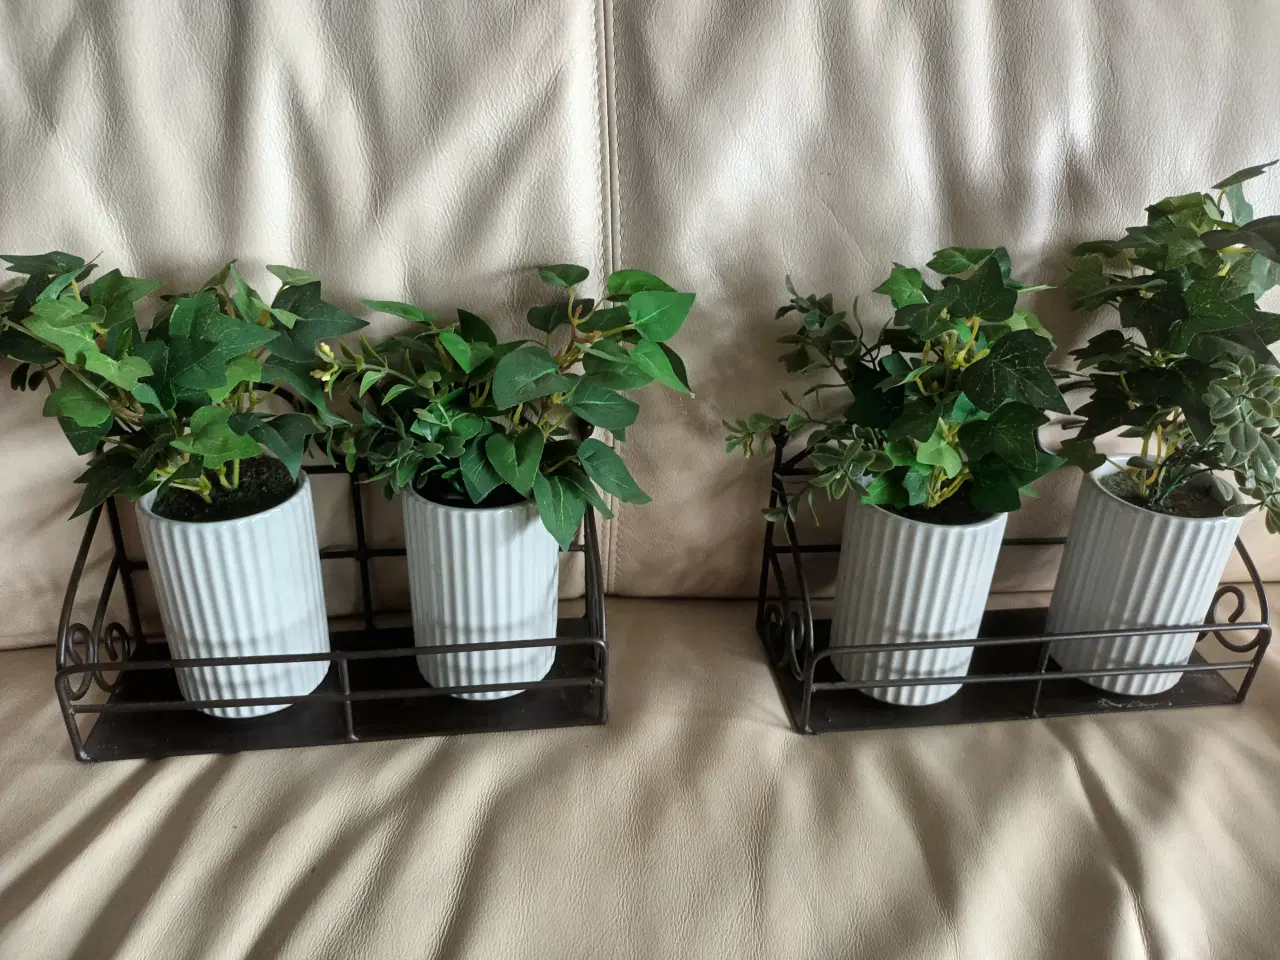 Billede 3 - 2 Flotte smedejernsholdere, 2 kunstige planter.